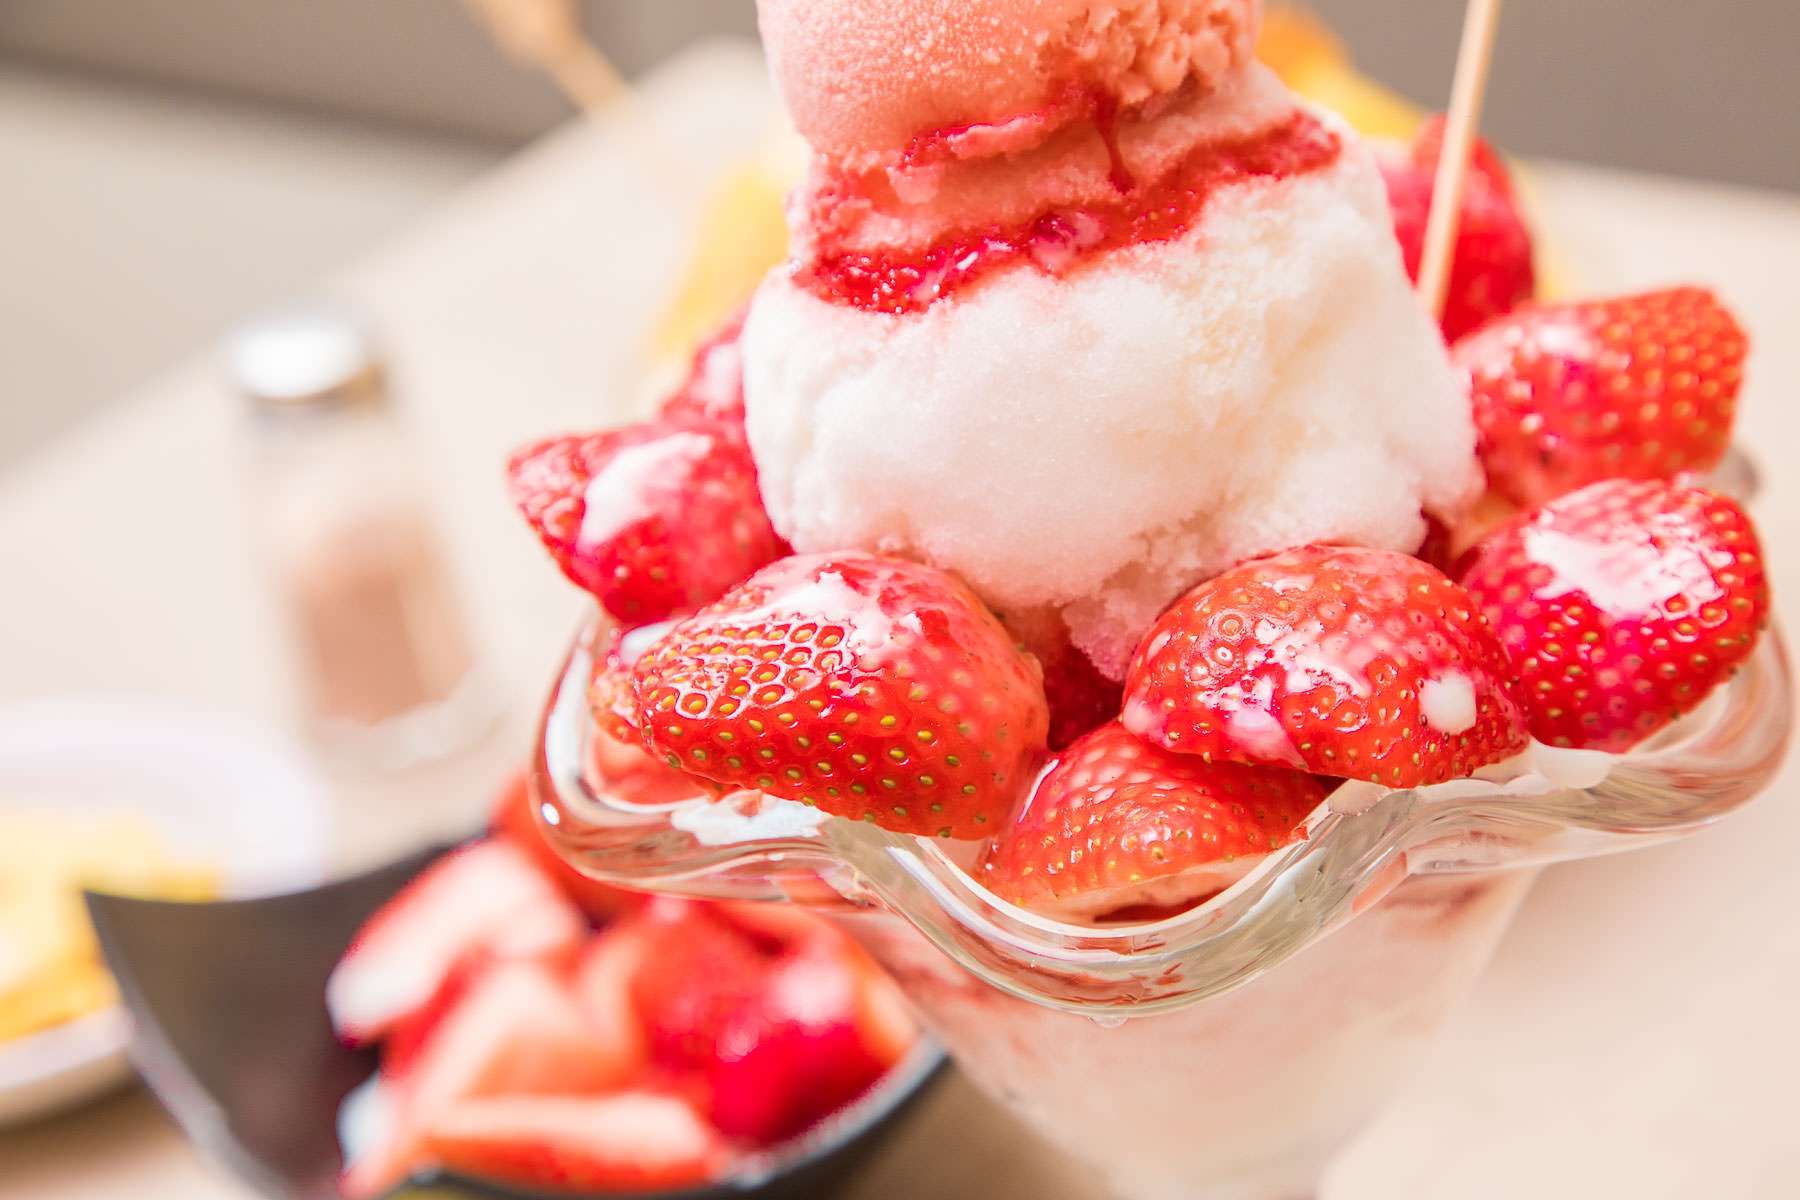 草莓冰,旺來冰館,台北美食,台北甜點,蘆洲美食,蘆洲甜點,蘆洲冰品,蘆洲草莓冰,台北草莓冰